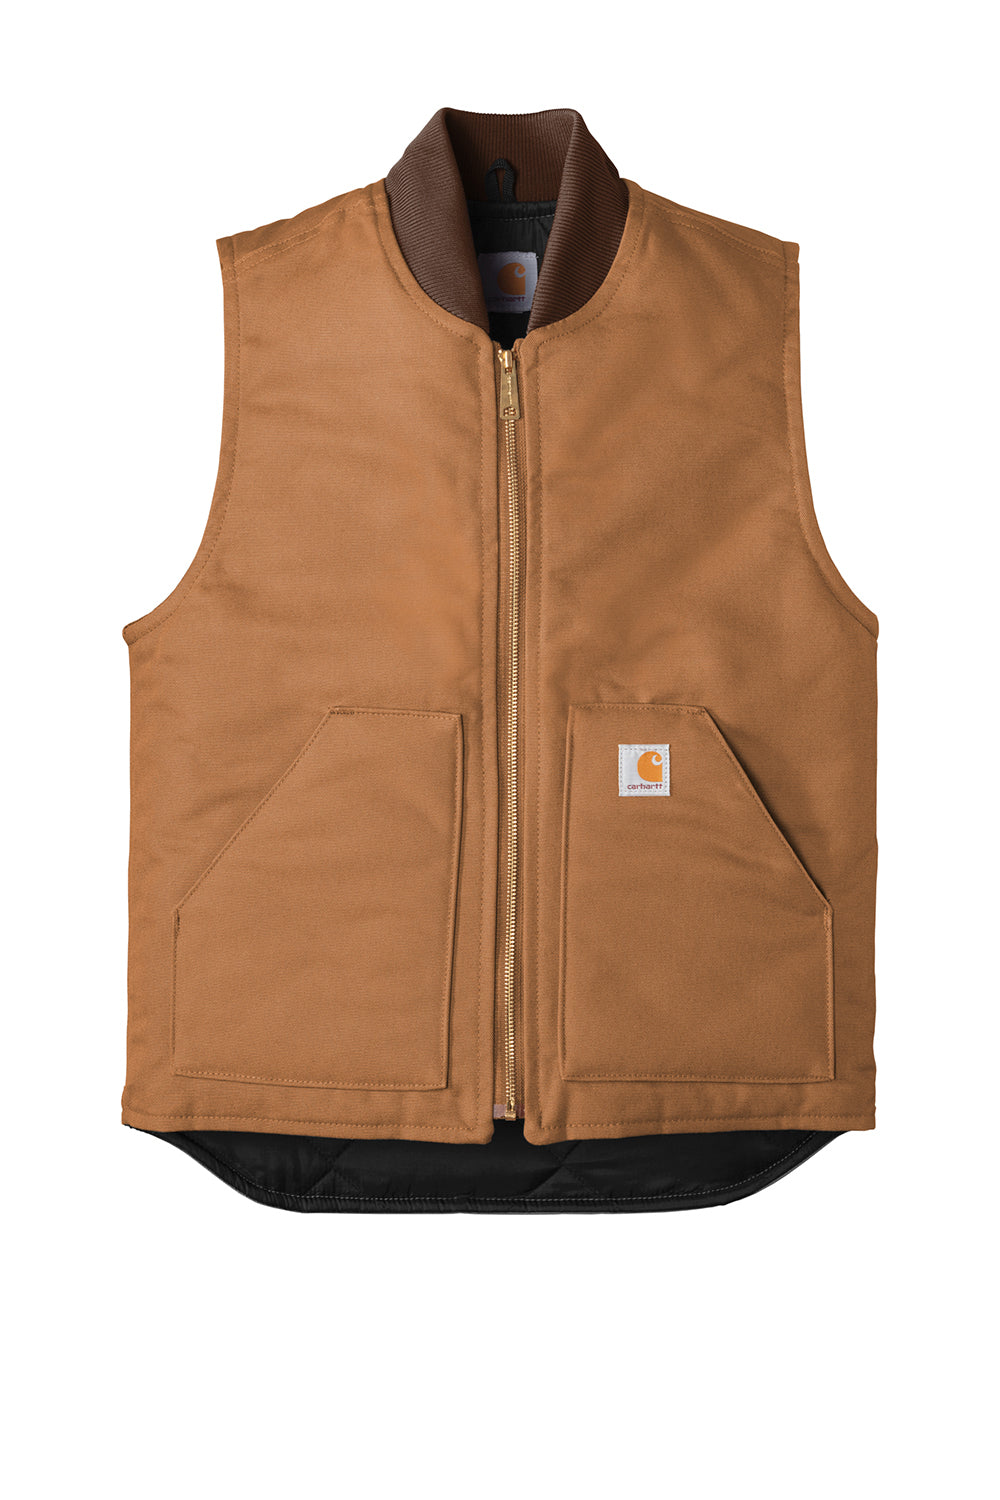 Carhartt CTV01 Mens Wind & Water Resistant Duck Cloth Full Zip Vest Carhartt Brown Flat Front